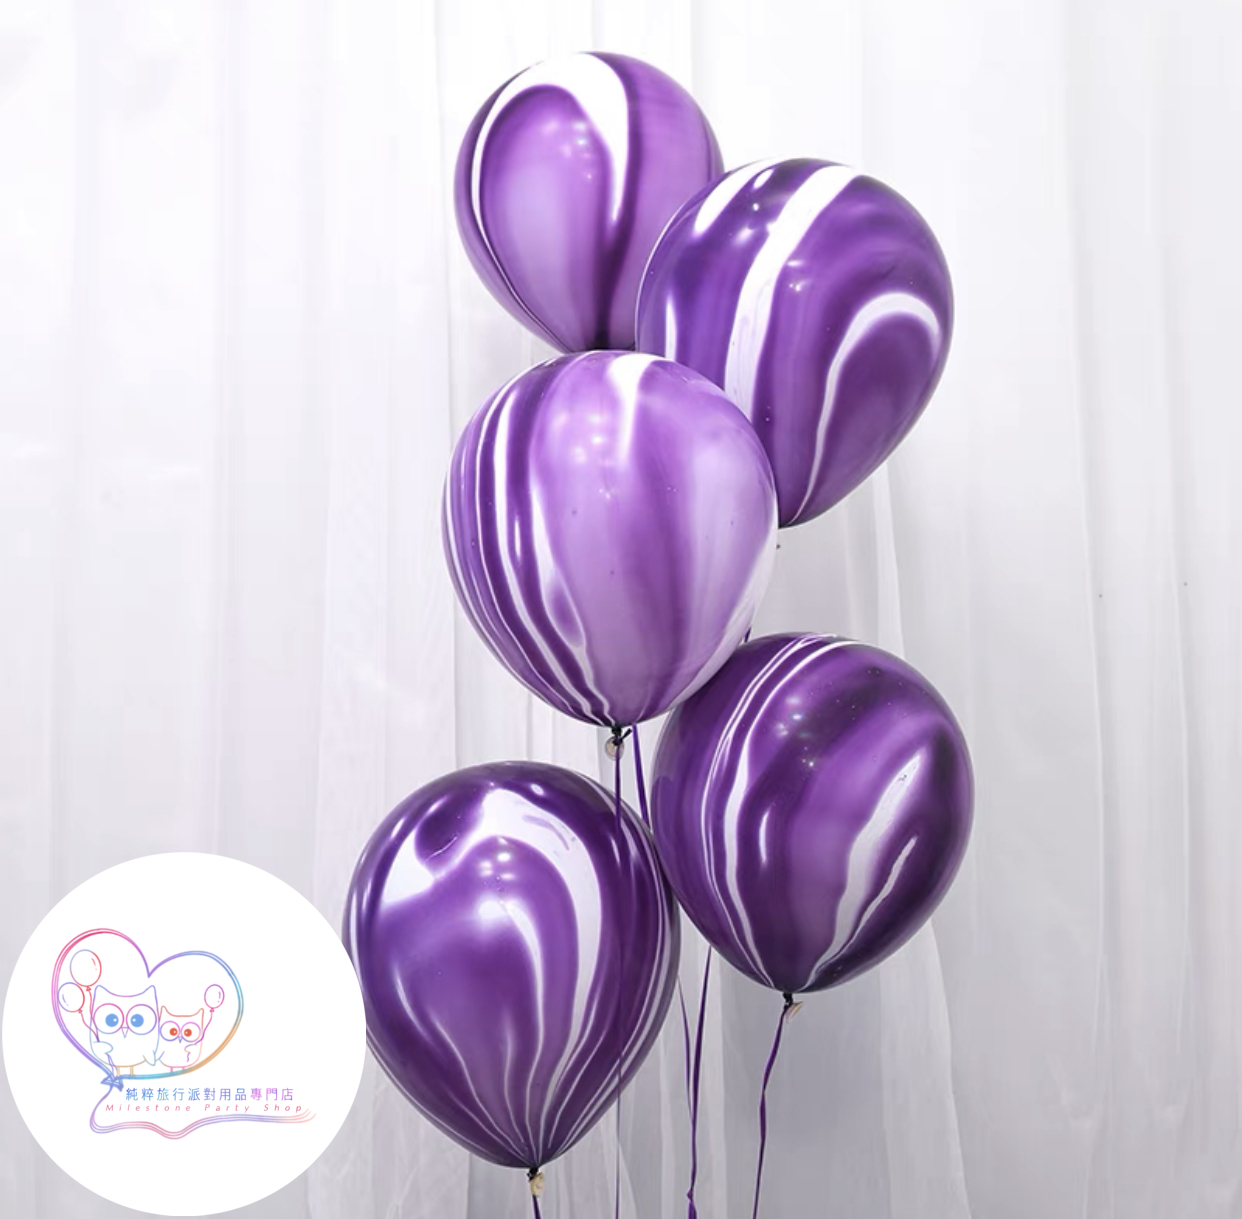 12吋瑪瑙色氣球 (紫色) (1pc) 12LBA4